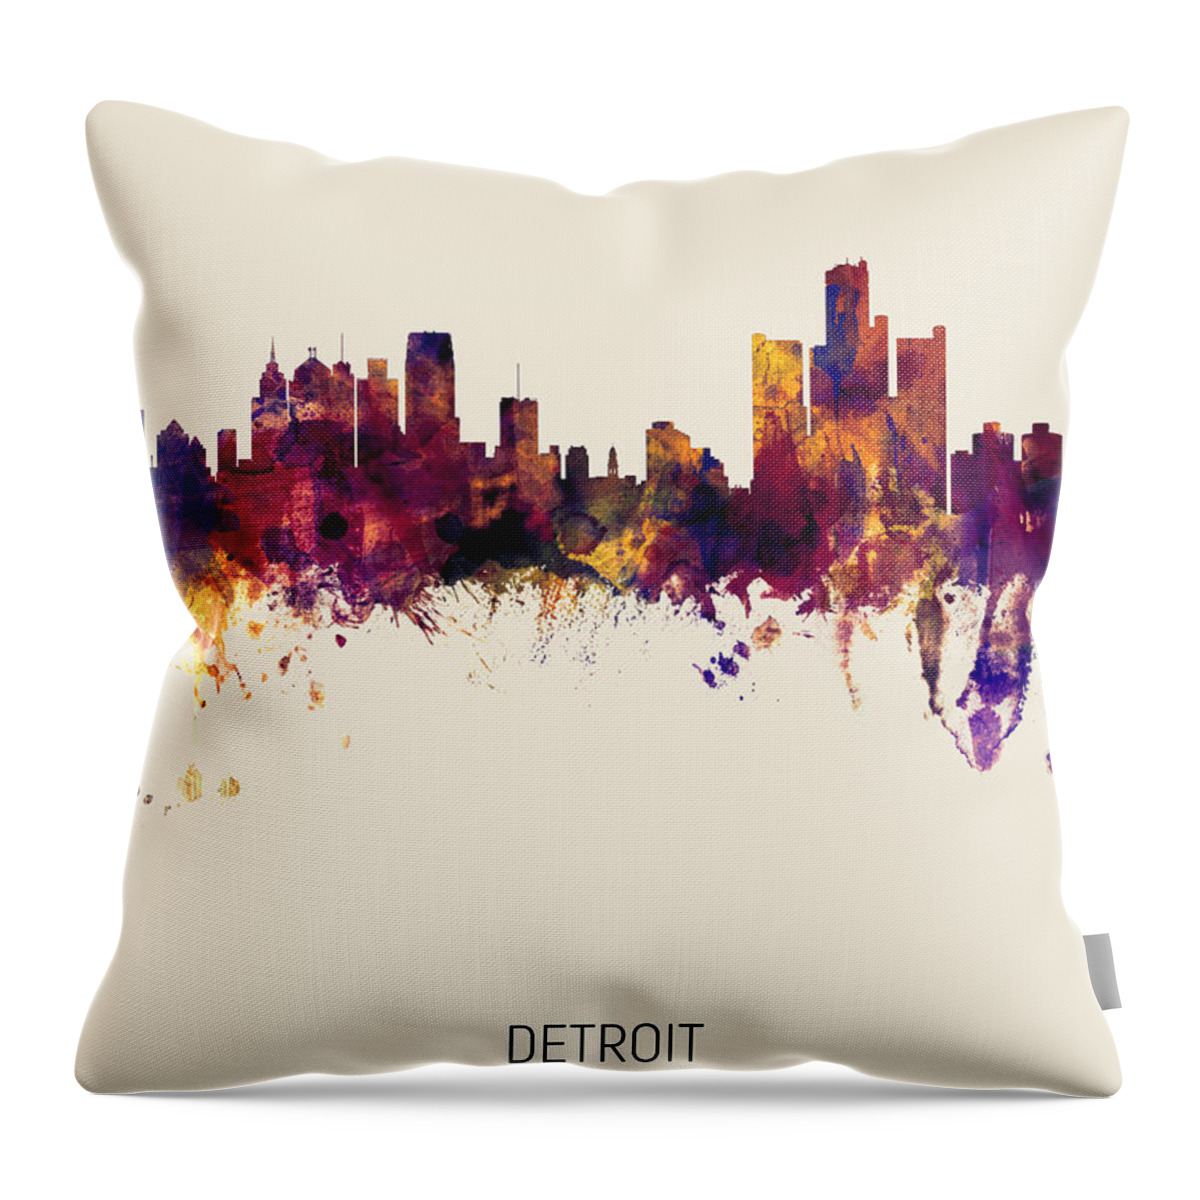 Detroit Throw Pillow featuring the digital art Detroit Michigan Skyline #20 by Michael Tompsett